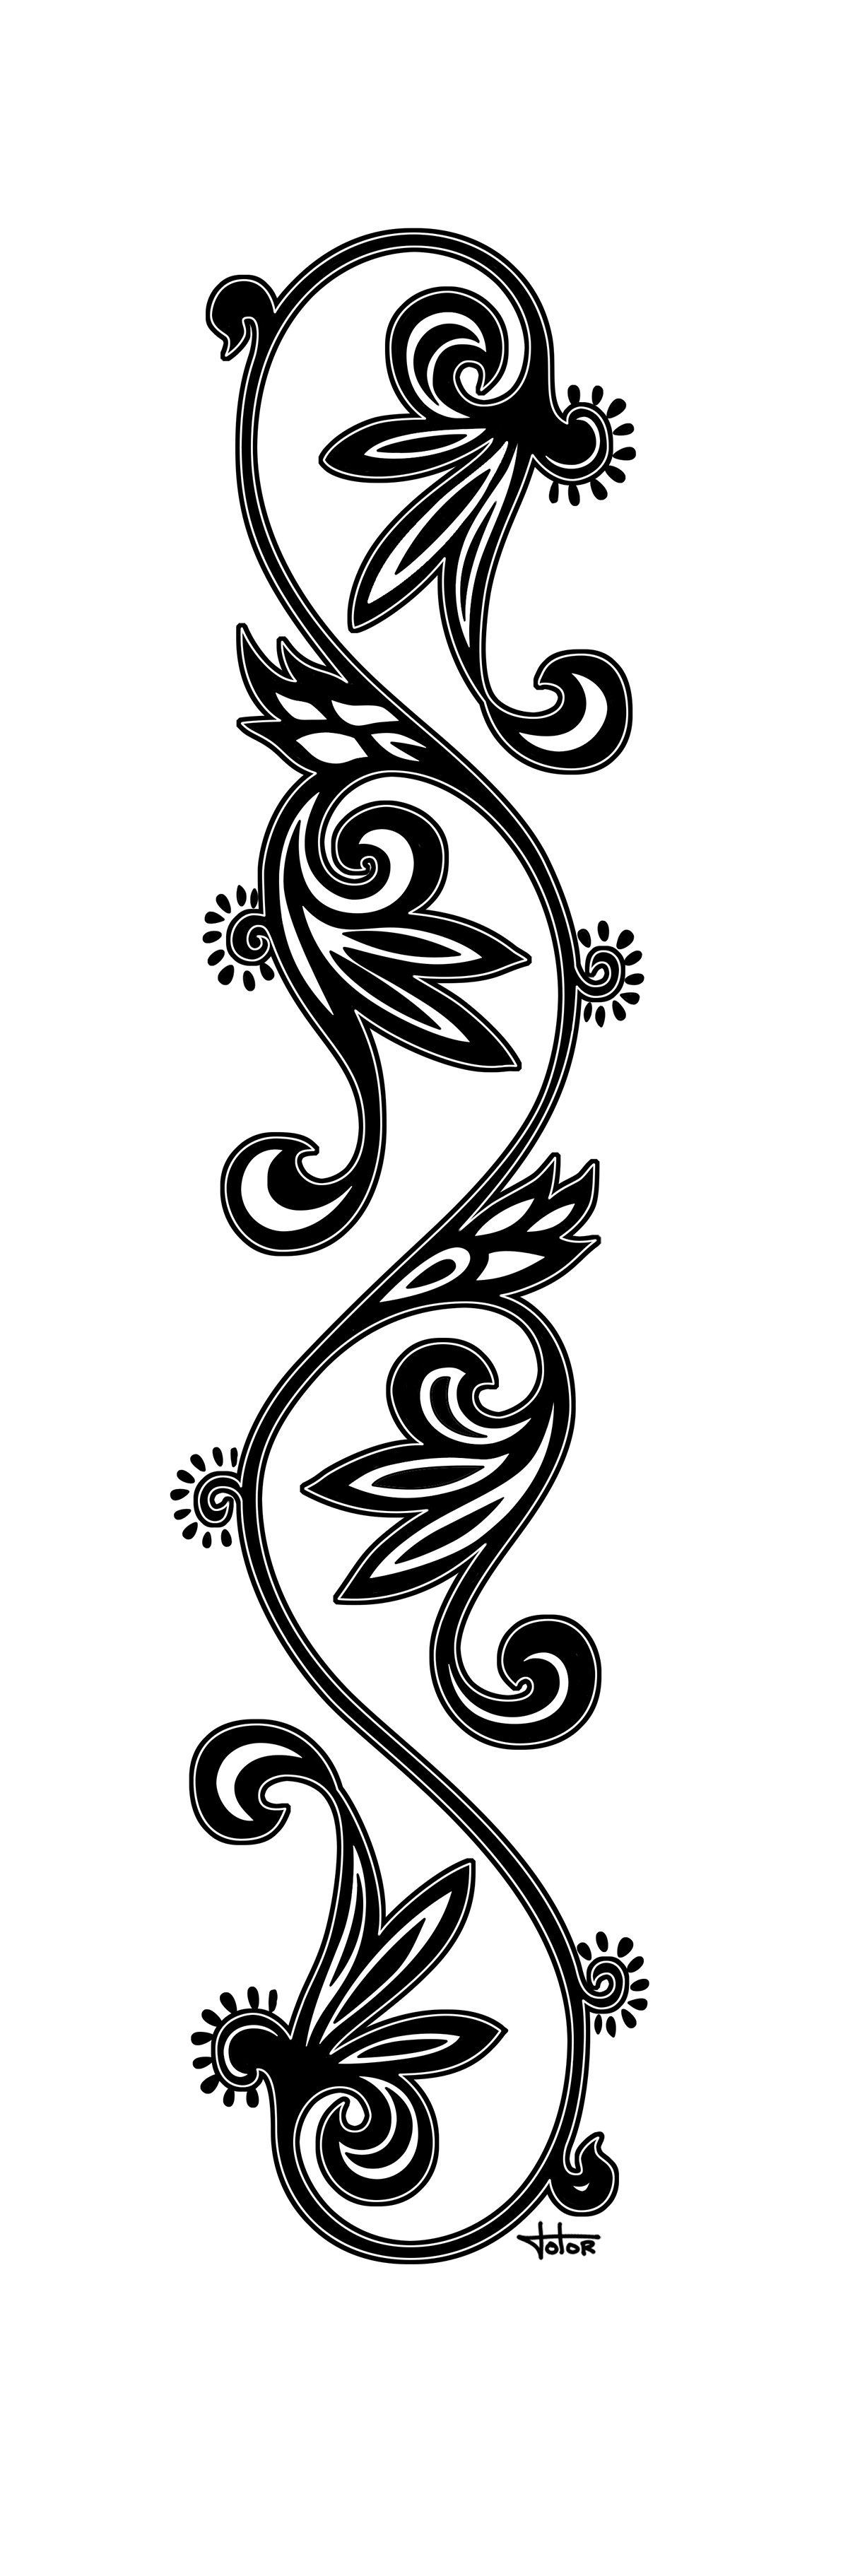 Graphiste indépendant, création d'illustrations pour tatouage avec ornementation florale